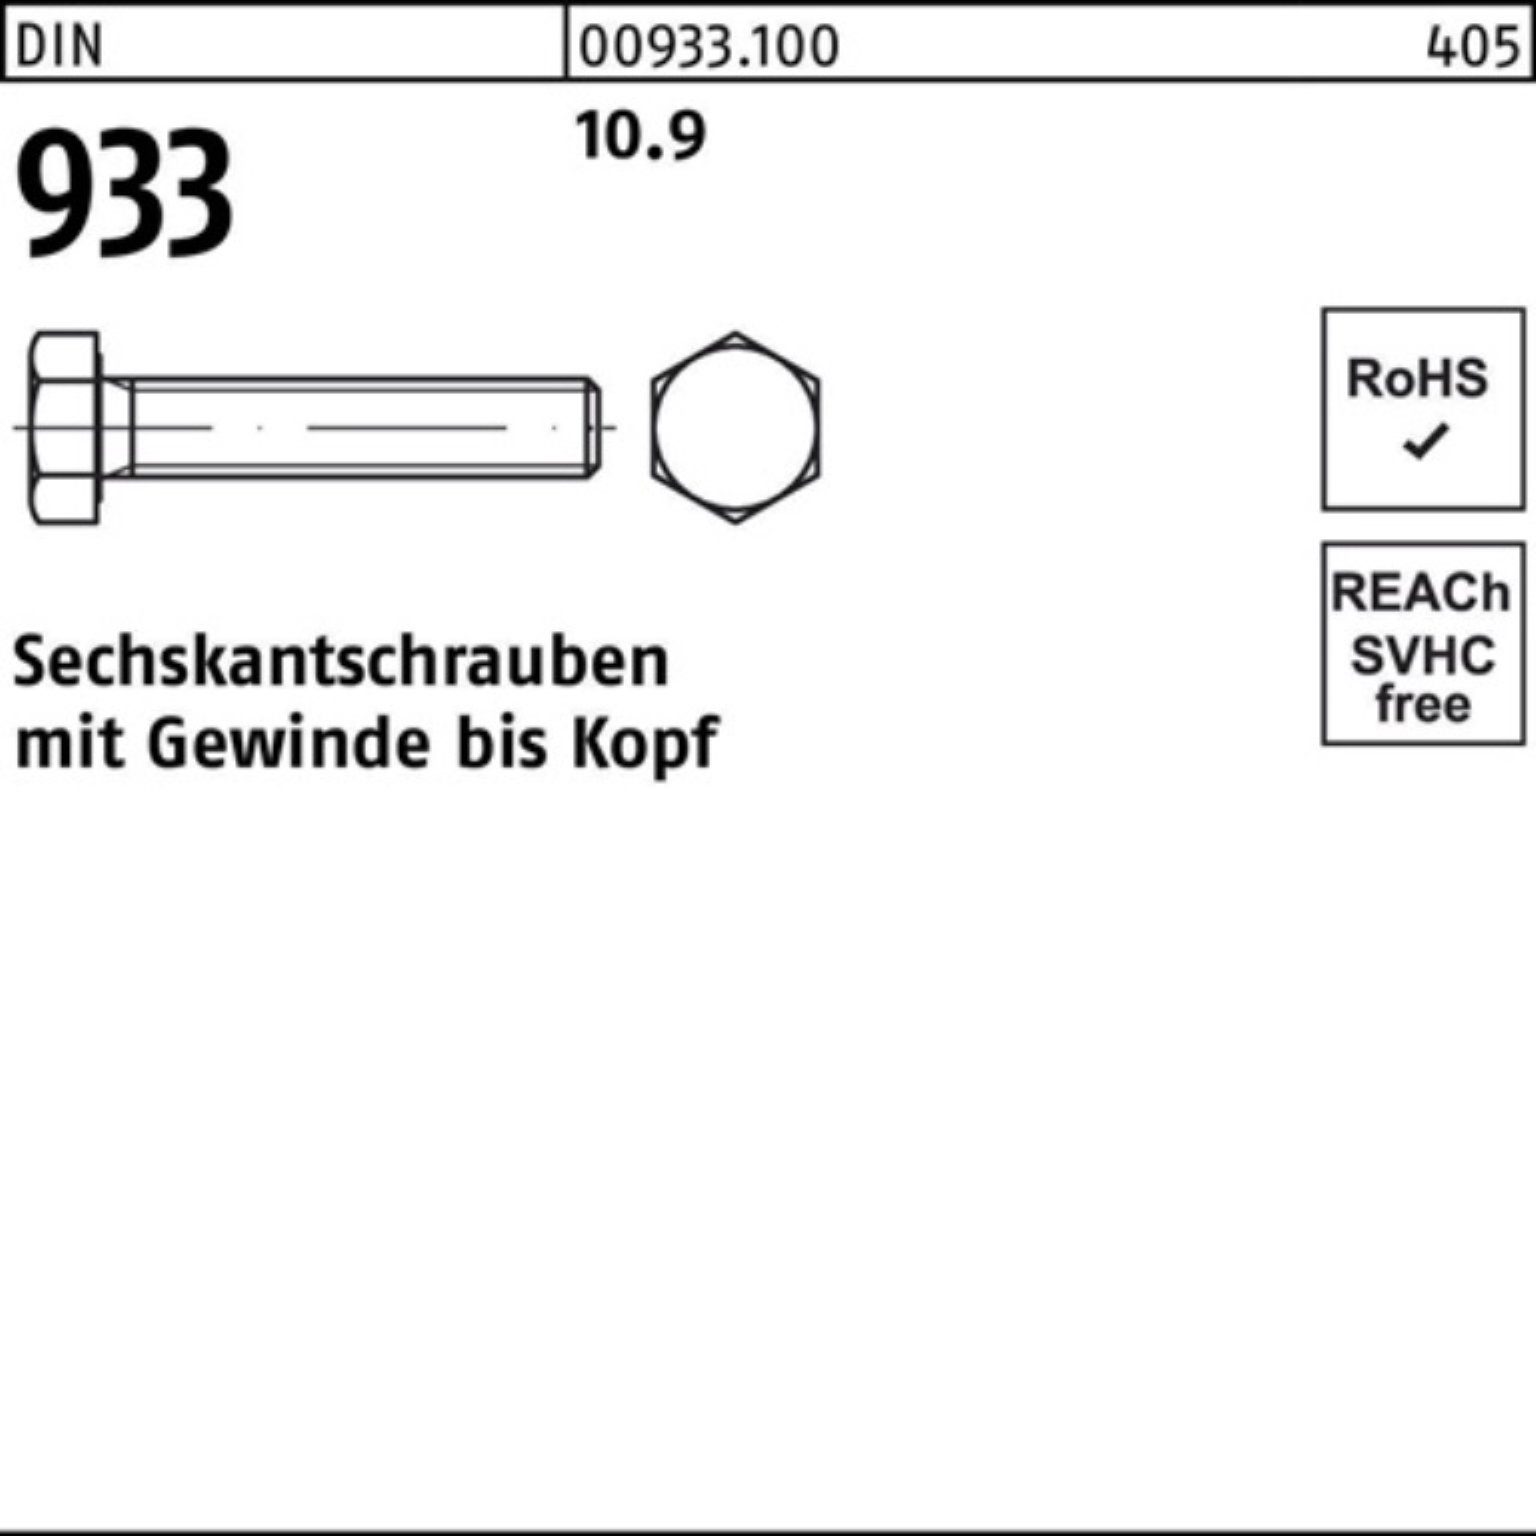 Sechskantschraube 933 90 DIN 10.9 Sechskantschraube Reyher M16x 25 Pack VG Stück DIN 100er 933